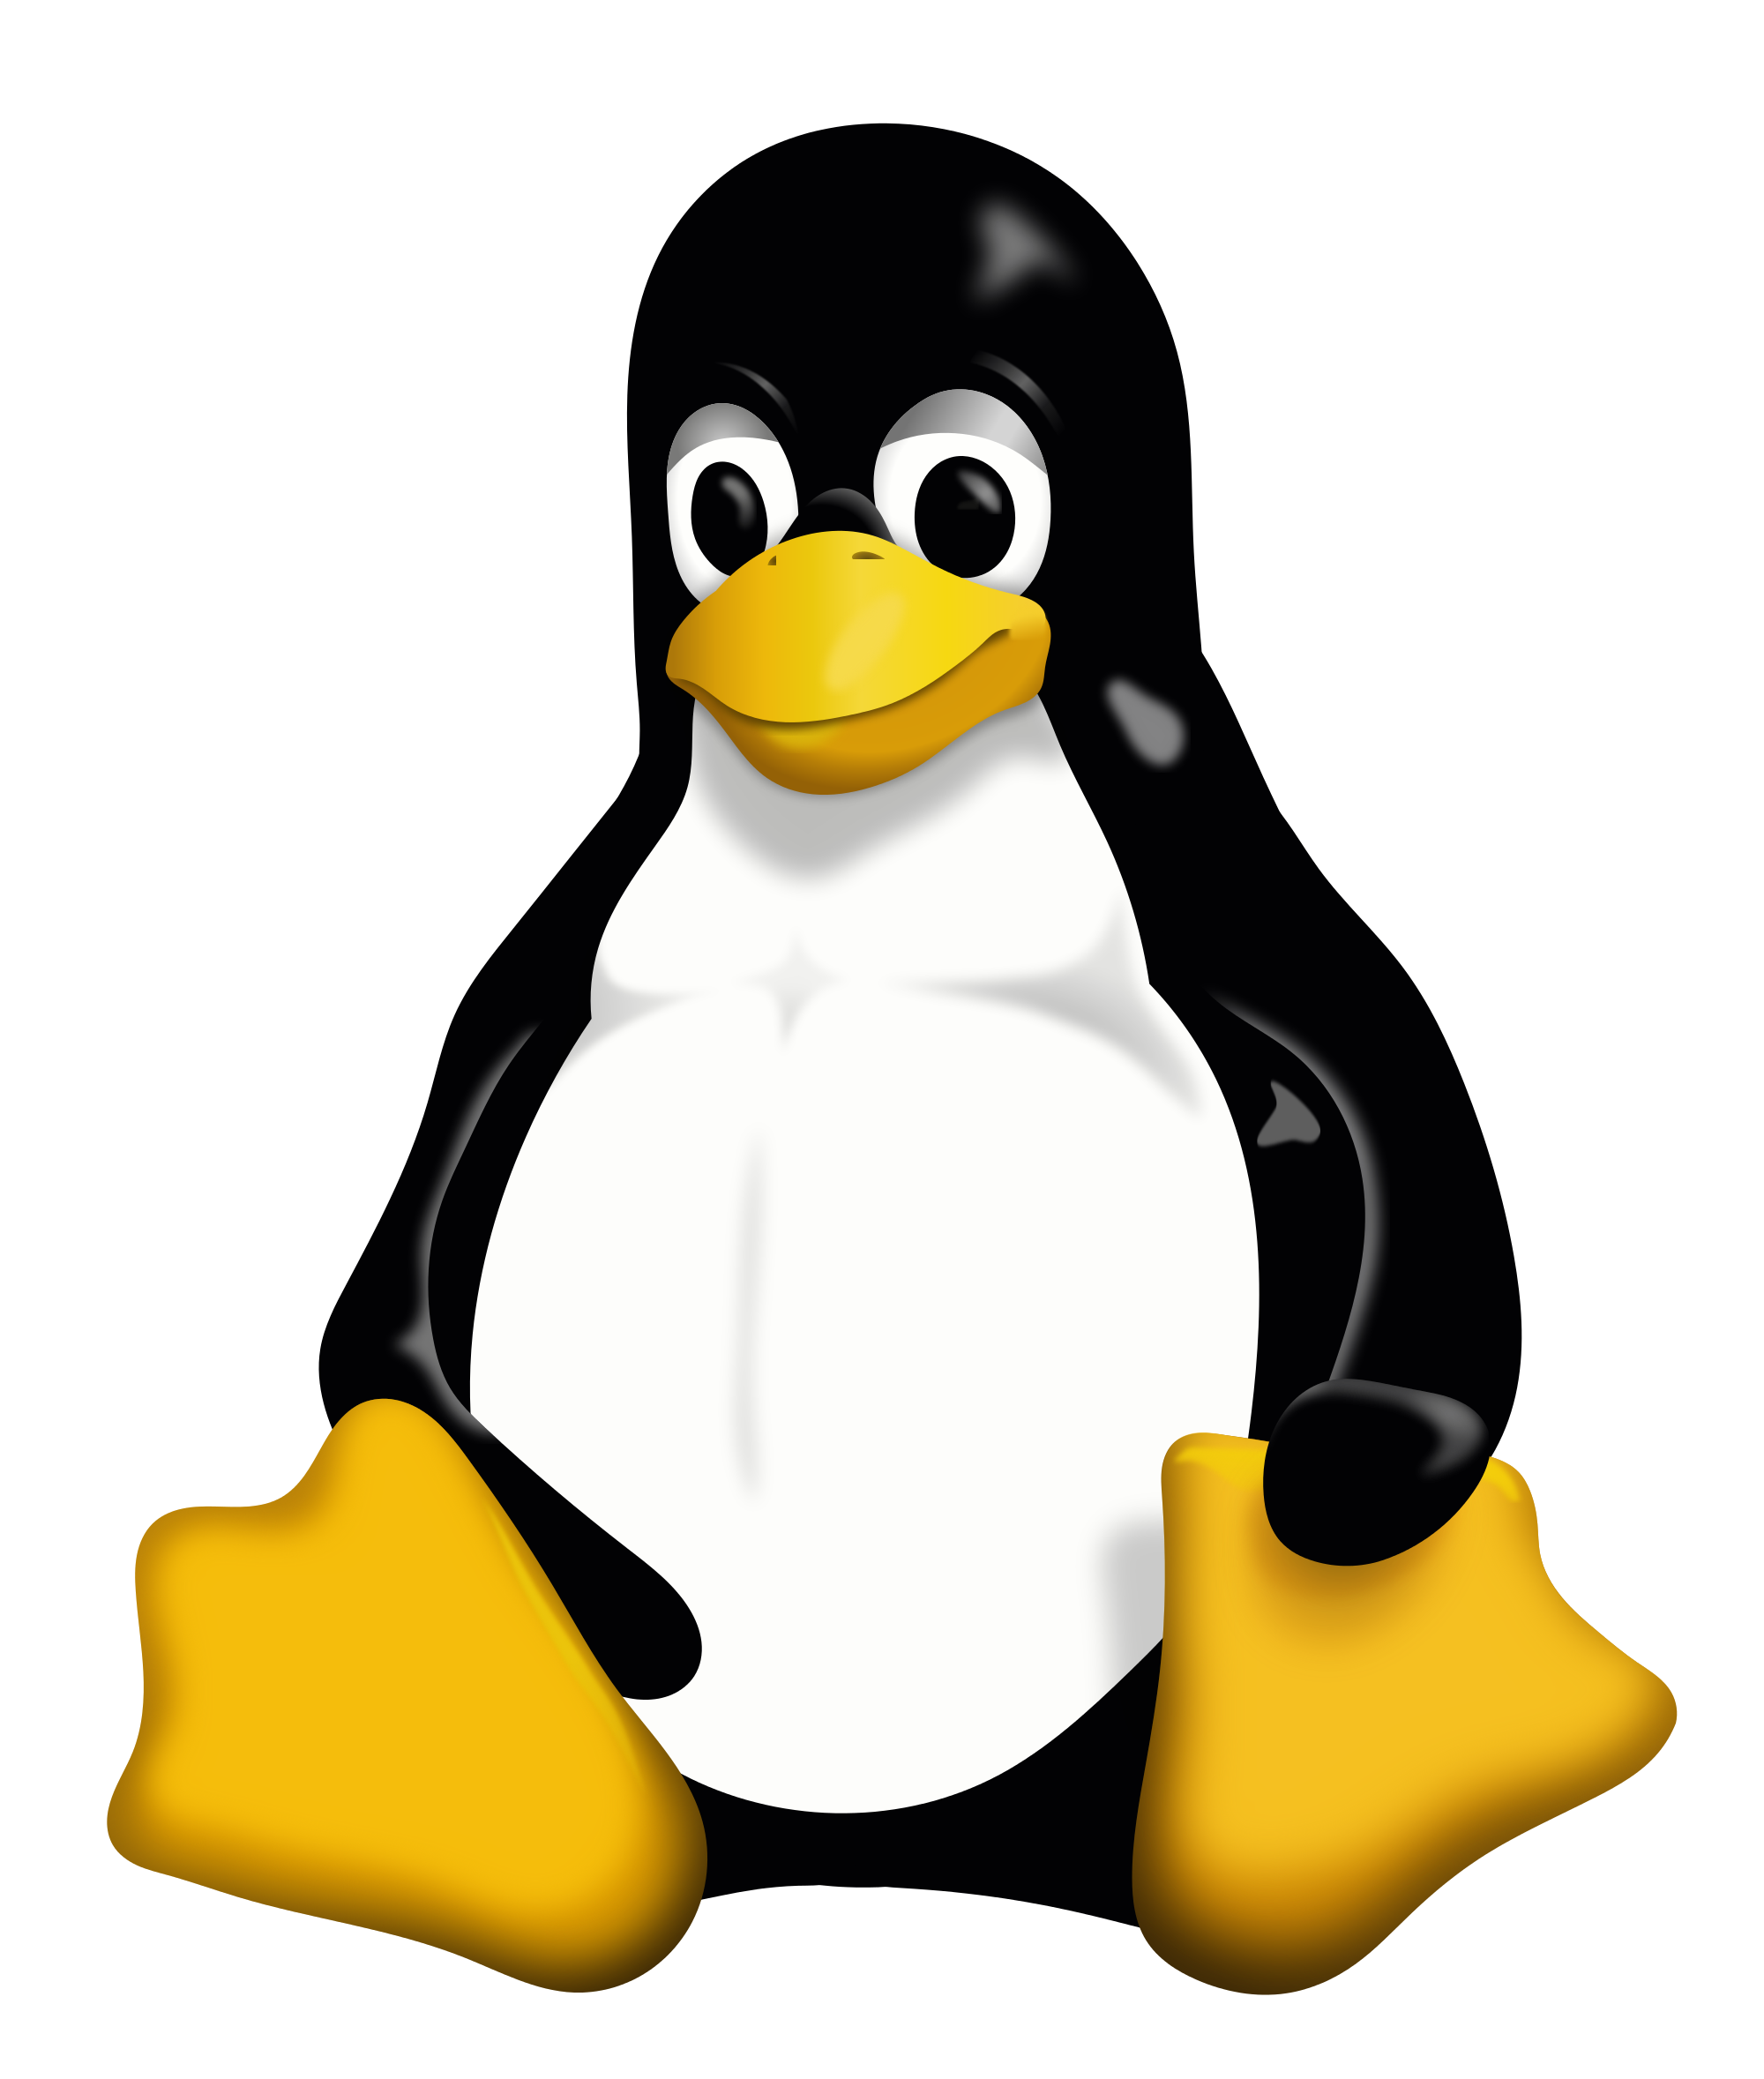 Linux / Unix